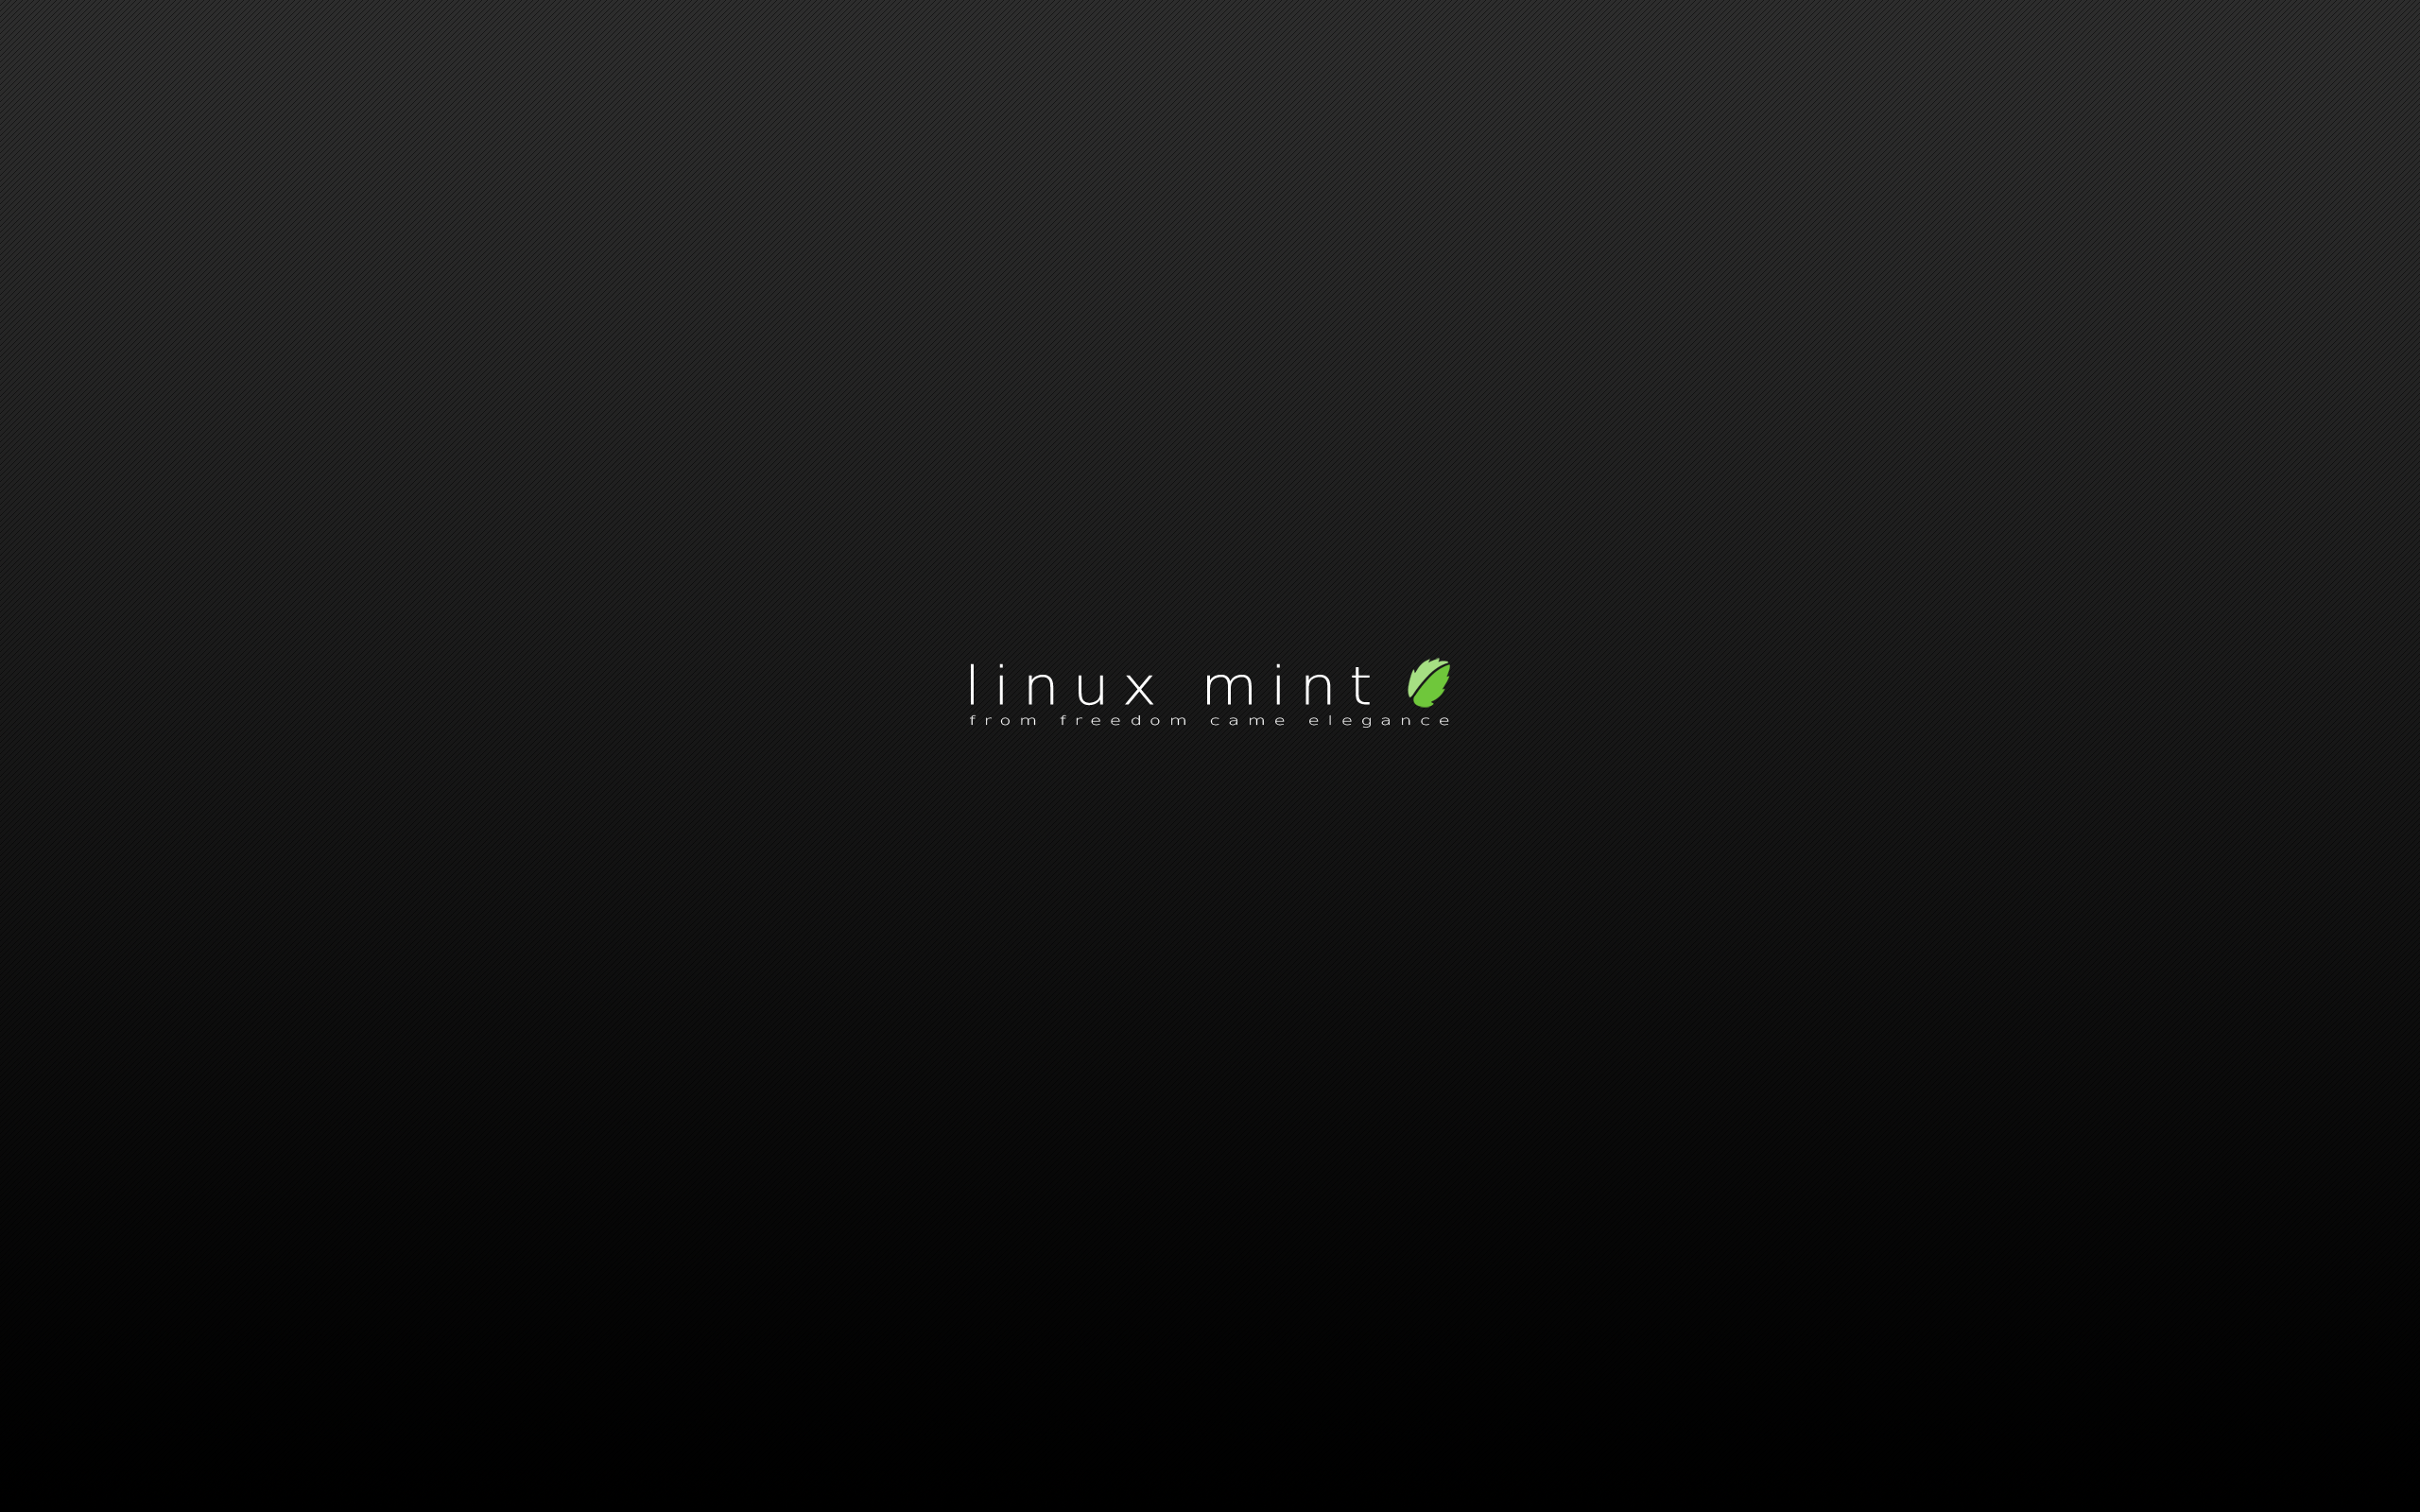 Muốn tạo một không gian làm việc và giải trí mới của bạn? Hãy thay đổi hình nền trên Linux Mint. Điều đặc biệt là Linux Mint cung cấp rất nhiều lựa chọn cho hình nền, giúp bạn thay đổi để phù hợp với phong cách của mình.